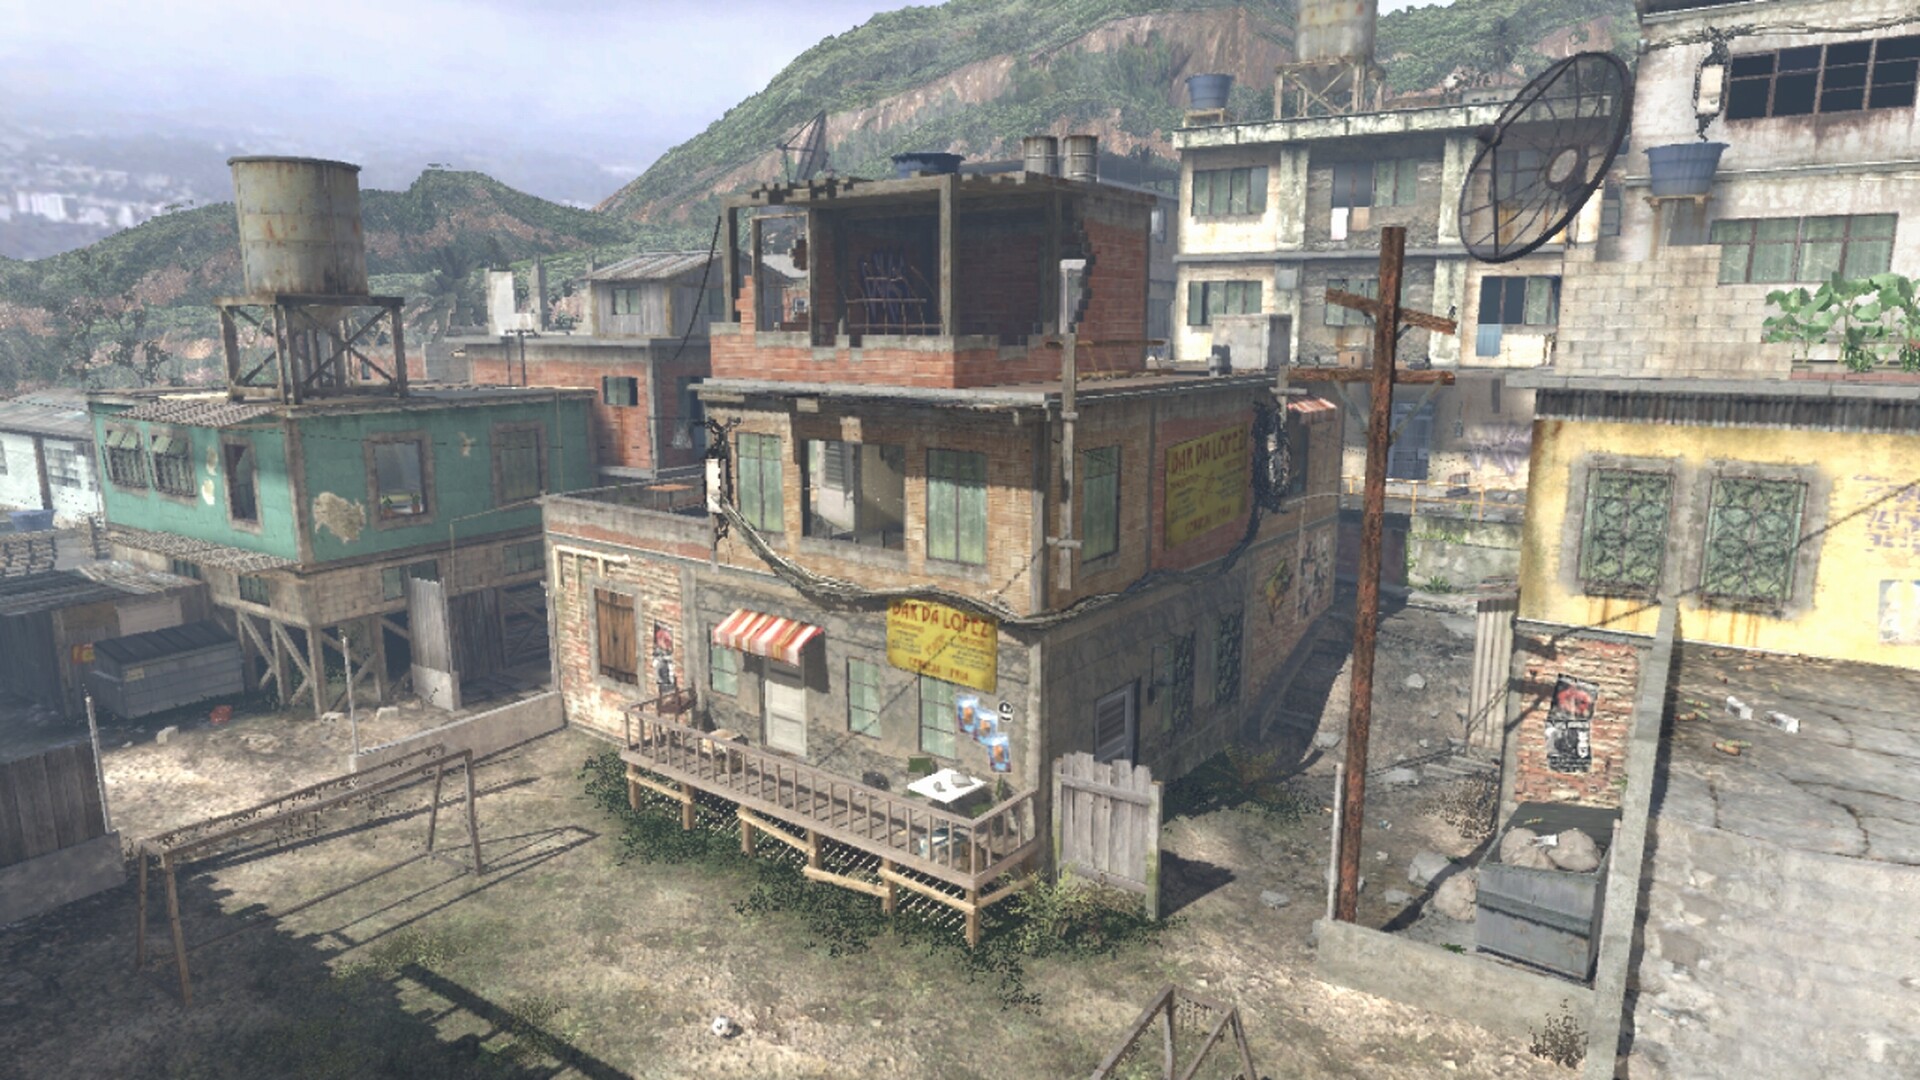 Favela - Modern Warfare 2 - Call of Duty Maps #mw2 #modernwarfare2 #cod  #callofduty